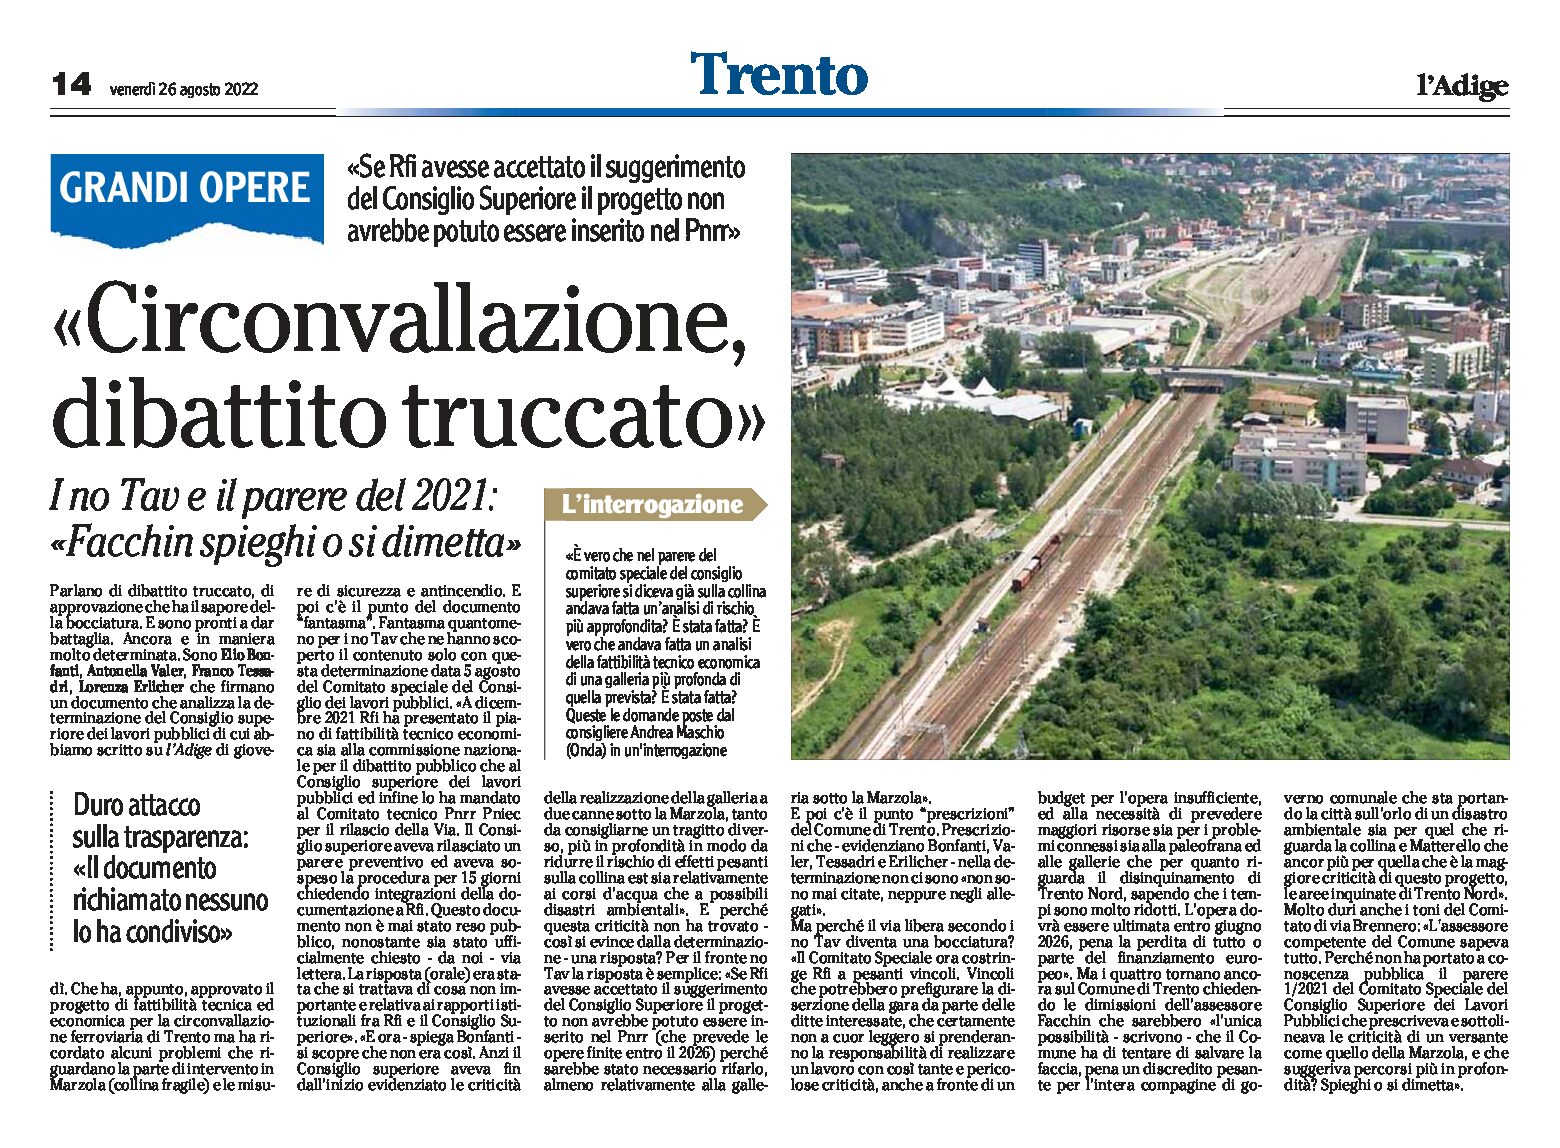 Trento: circonvallazione, dibattito truccato